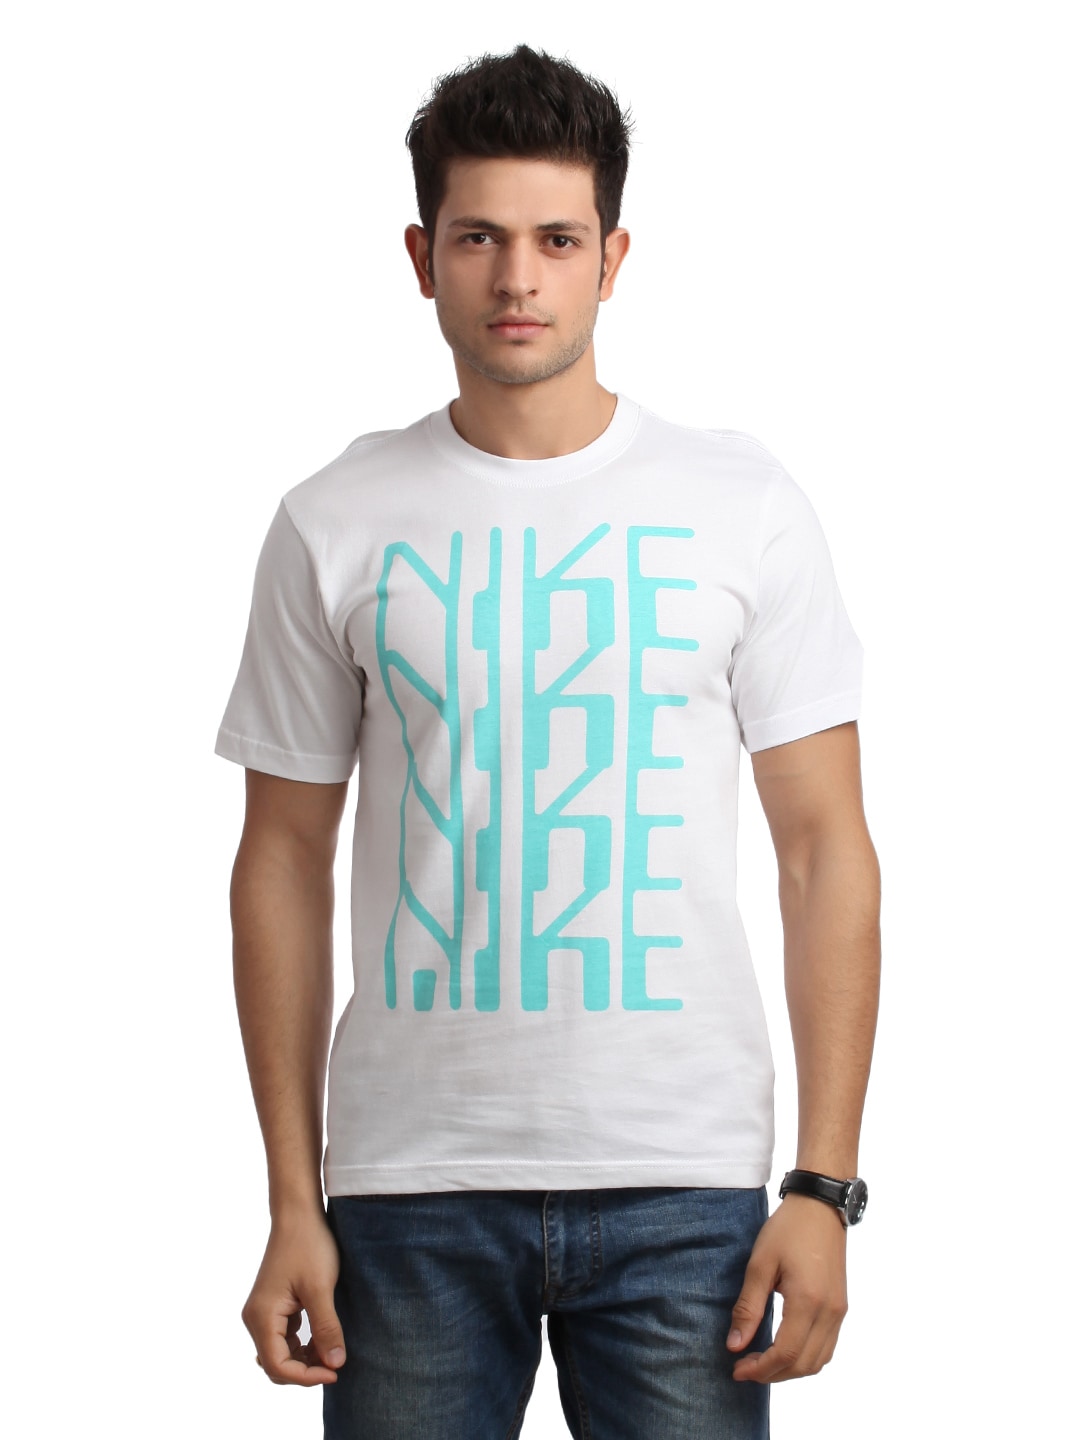 Nike Men White Printed T-shirt